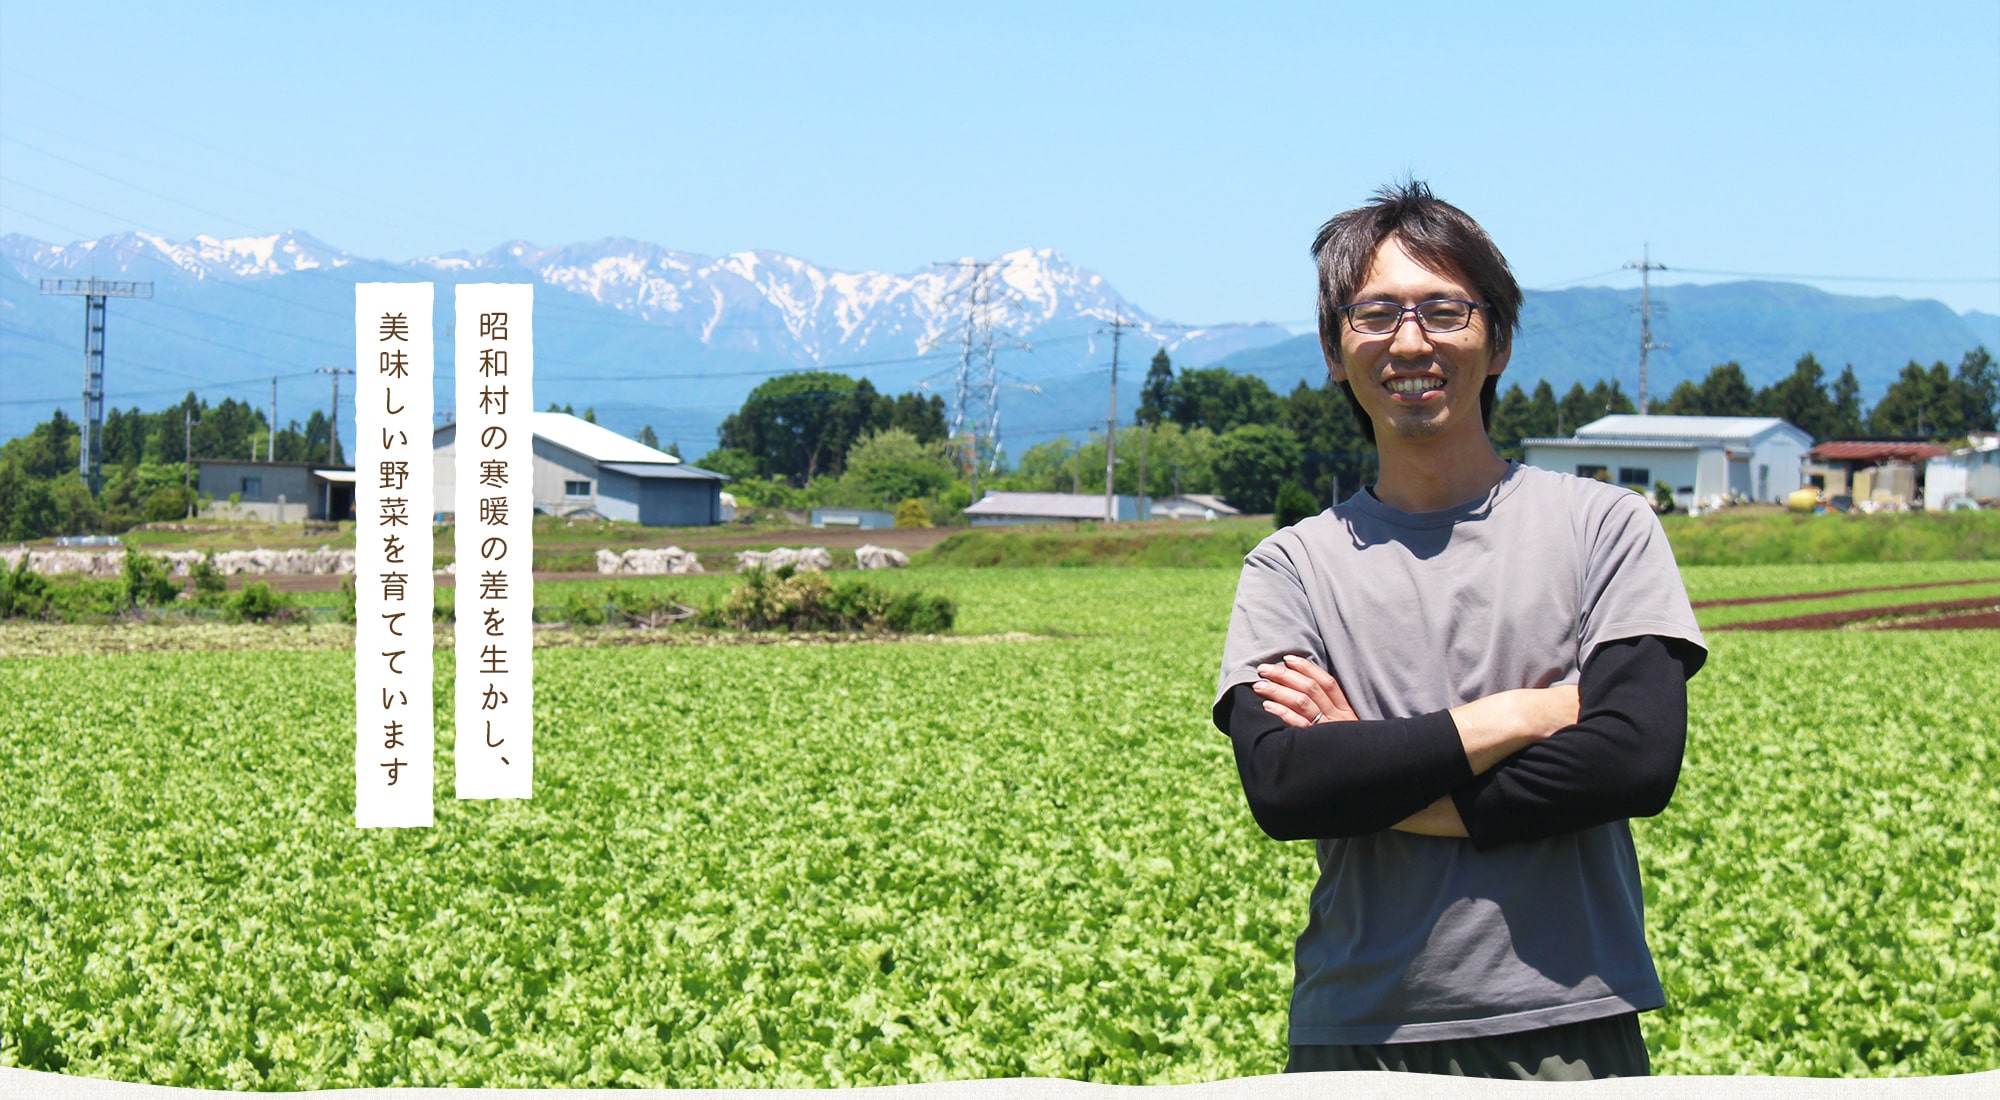 昭和村の寒暖の差を生かし、美味しい野菜を育てています。